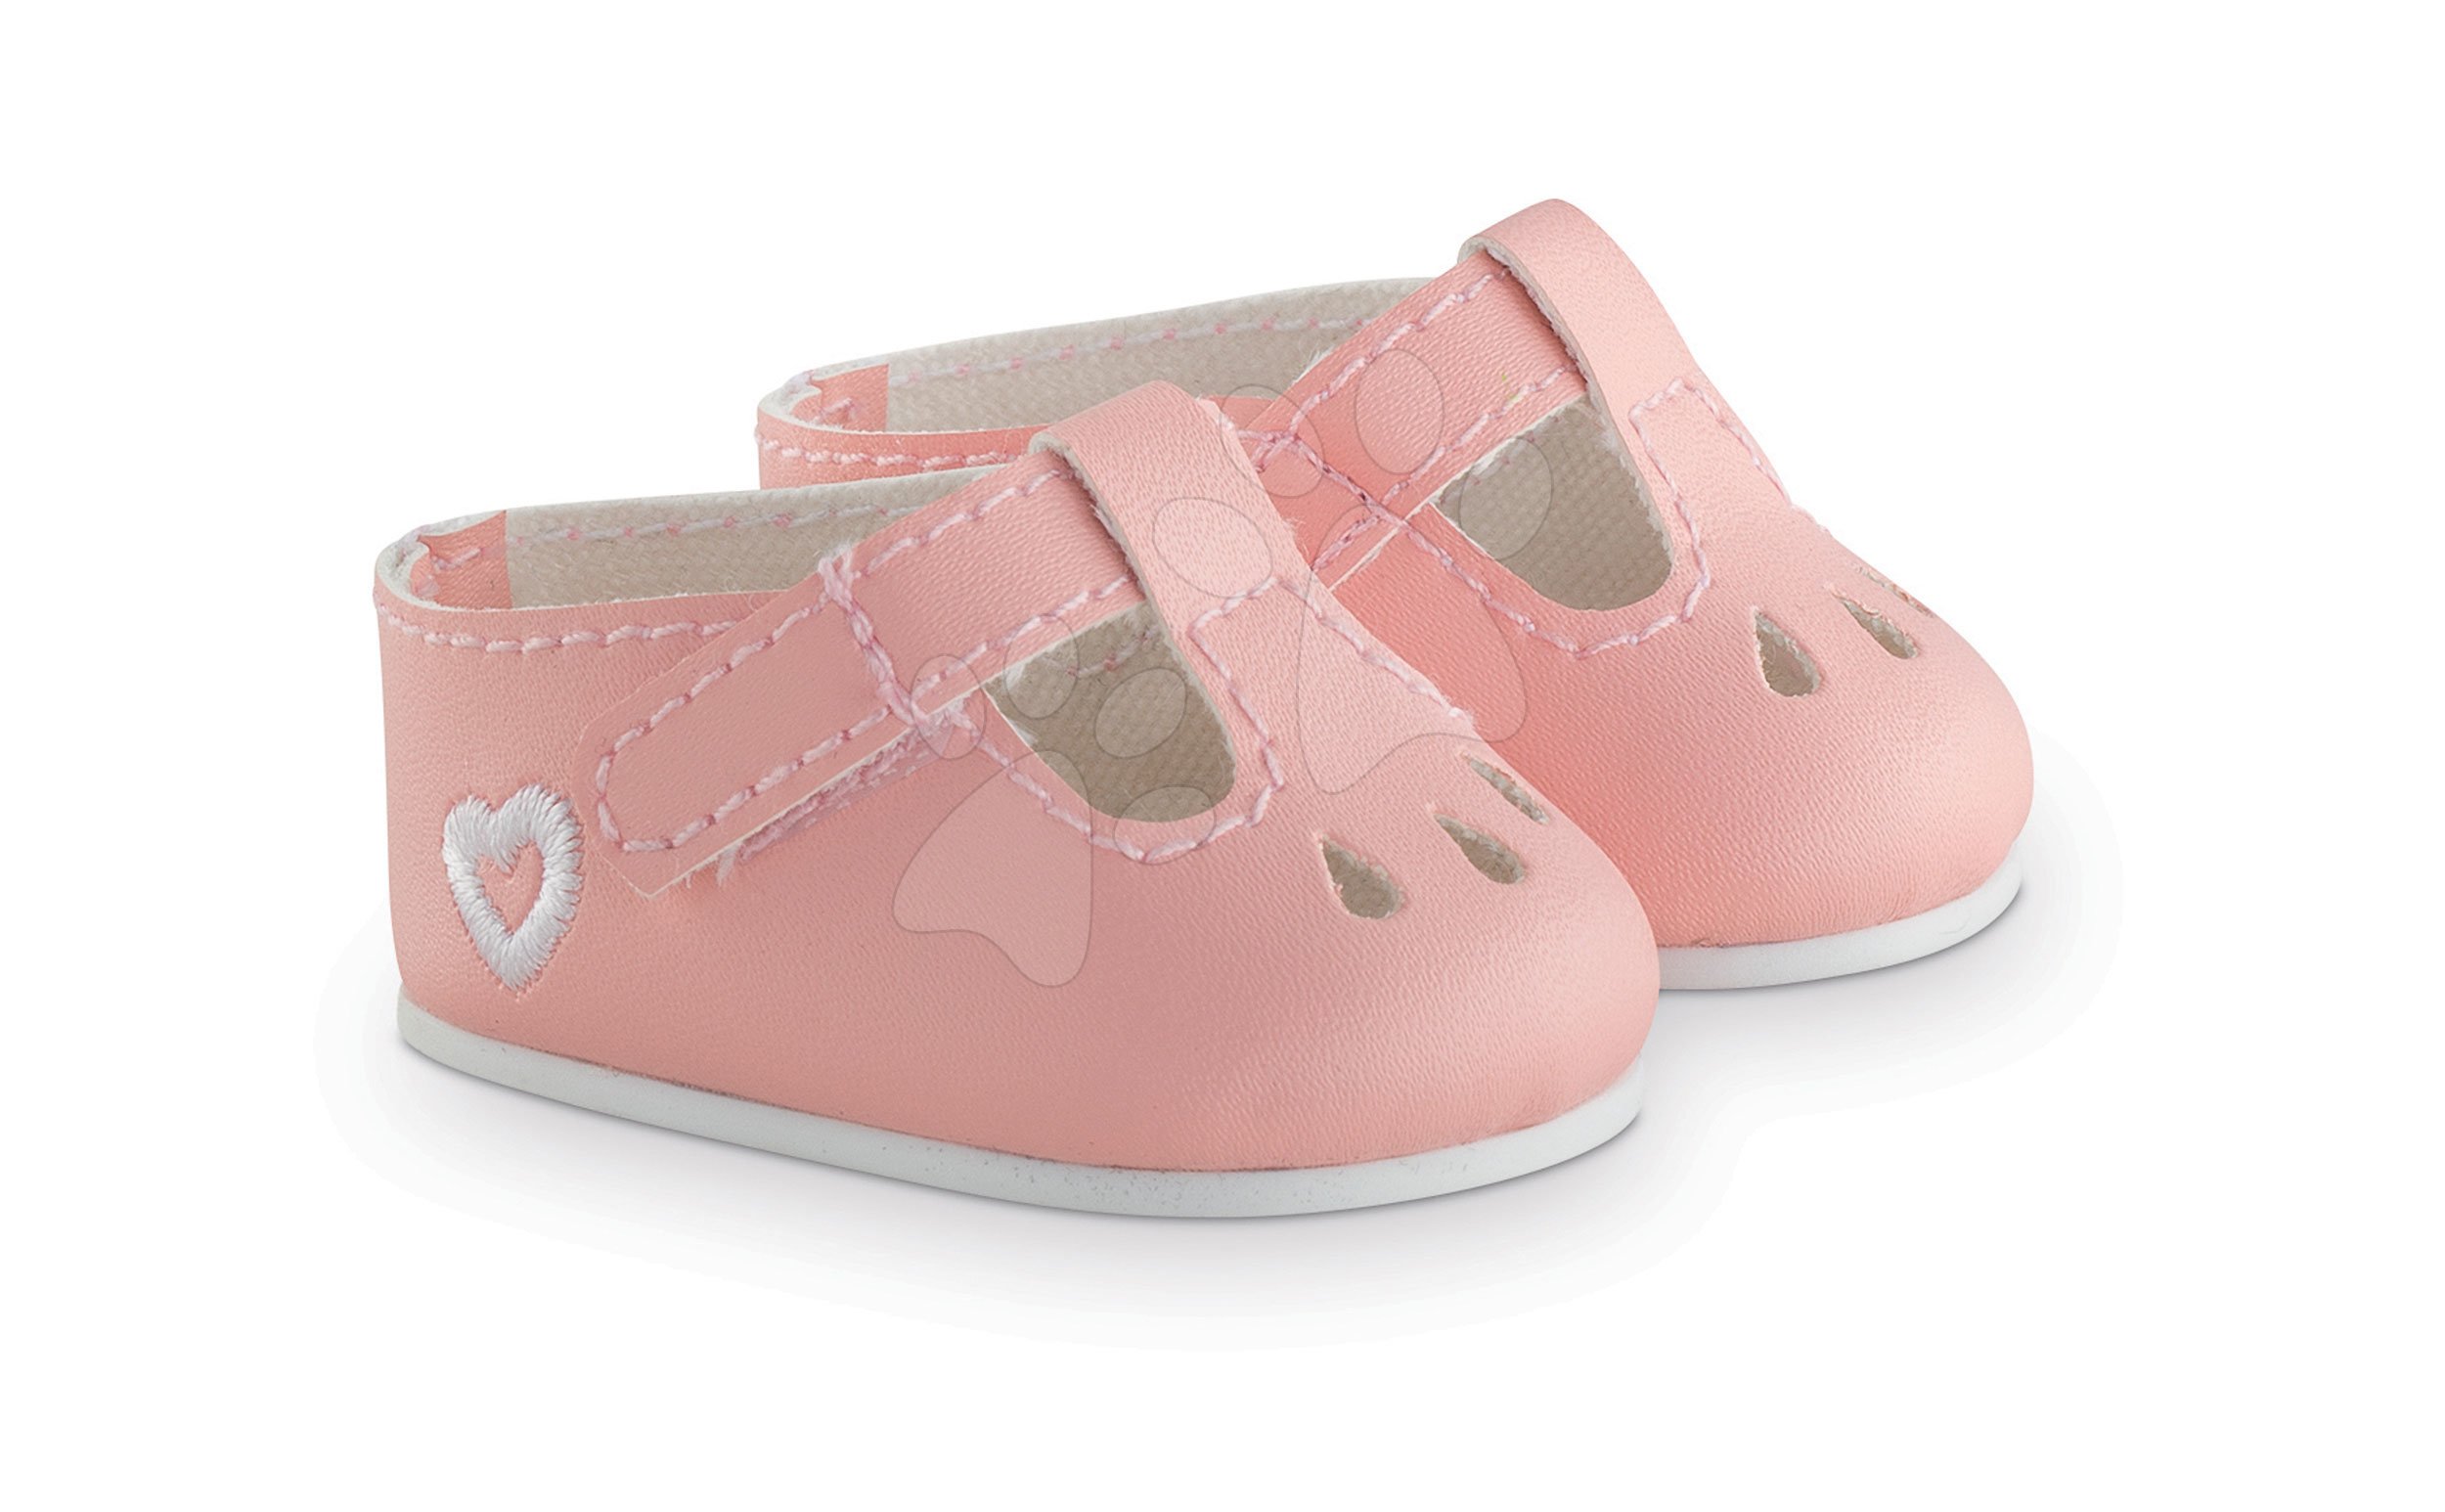 Játékbaba ruhák - Cipellők Ankle Strap Shoes Pink Mon Grand Poupon Corolle 36 cm játékbabának rózsaszín 3 évtől